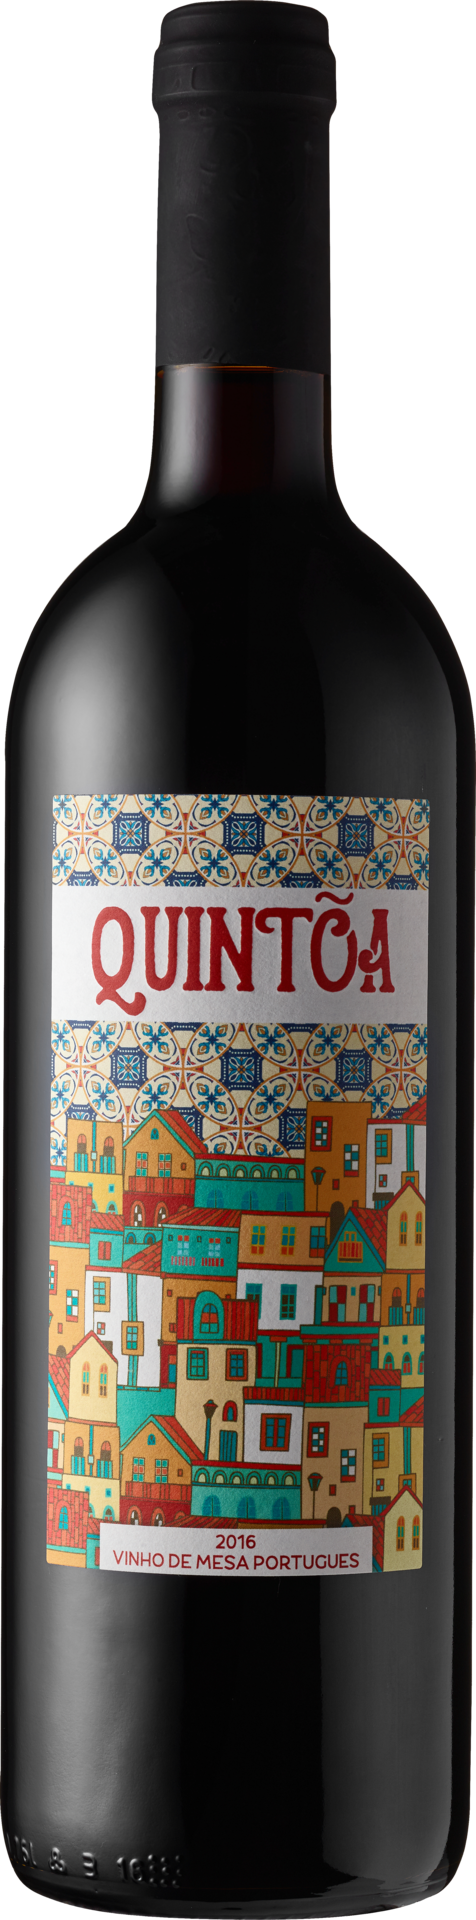 QUINTOA, Vinho de mesa portugues